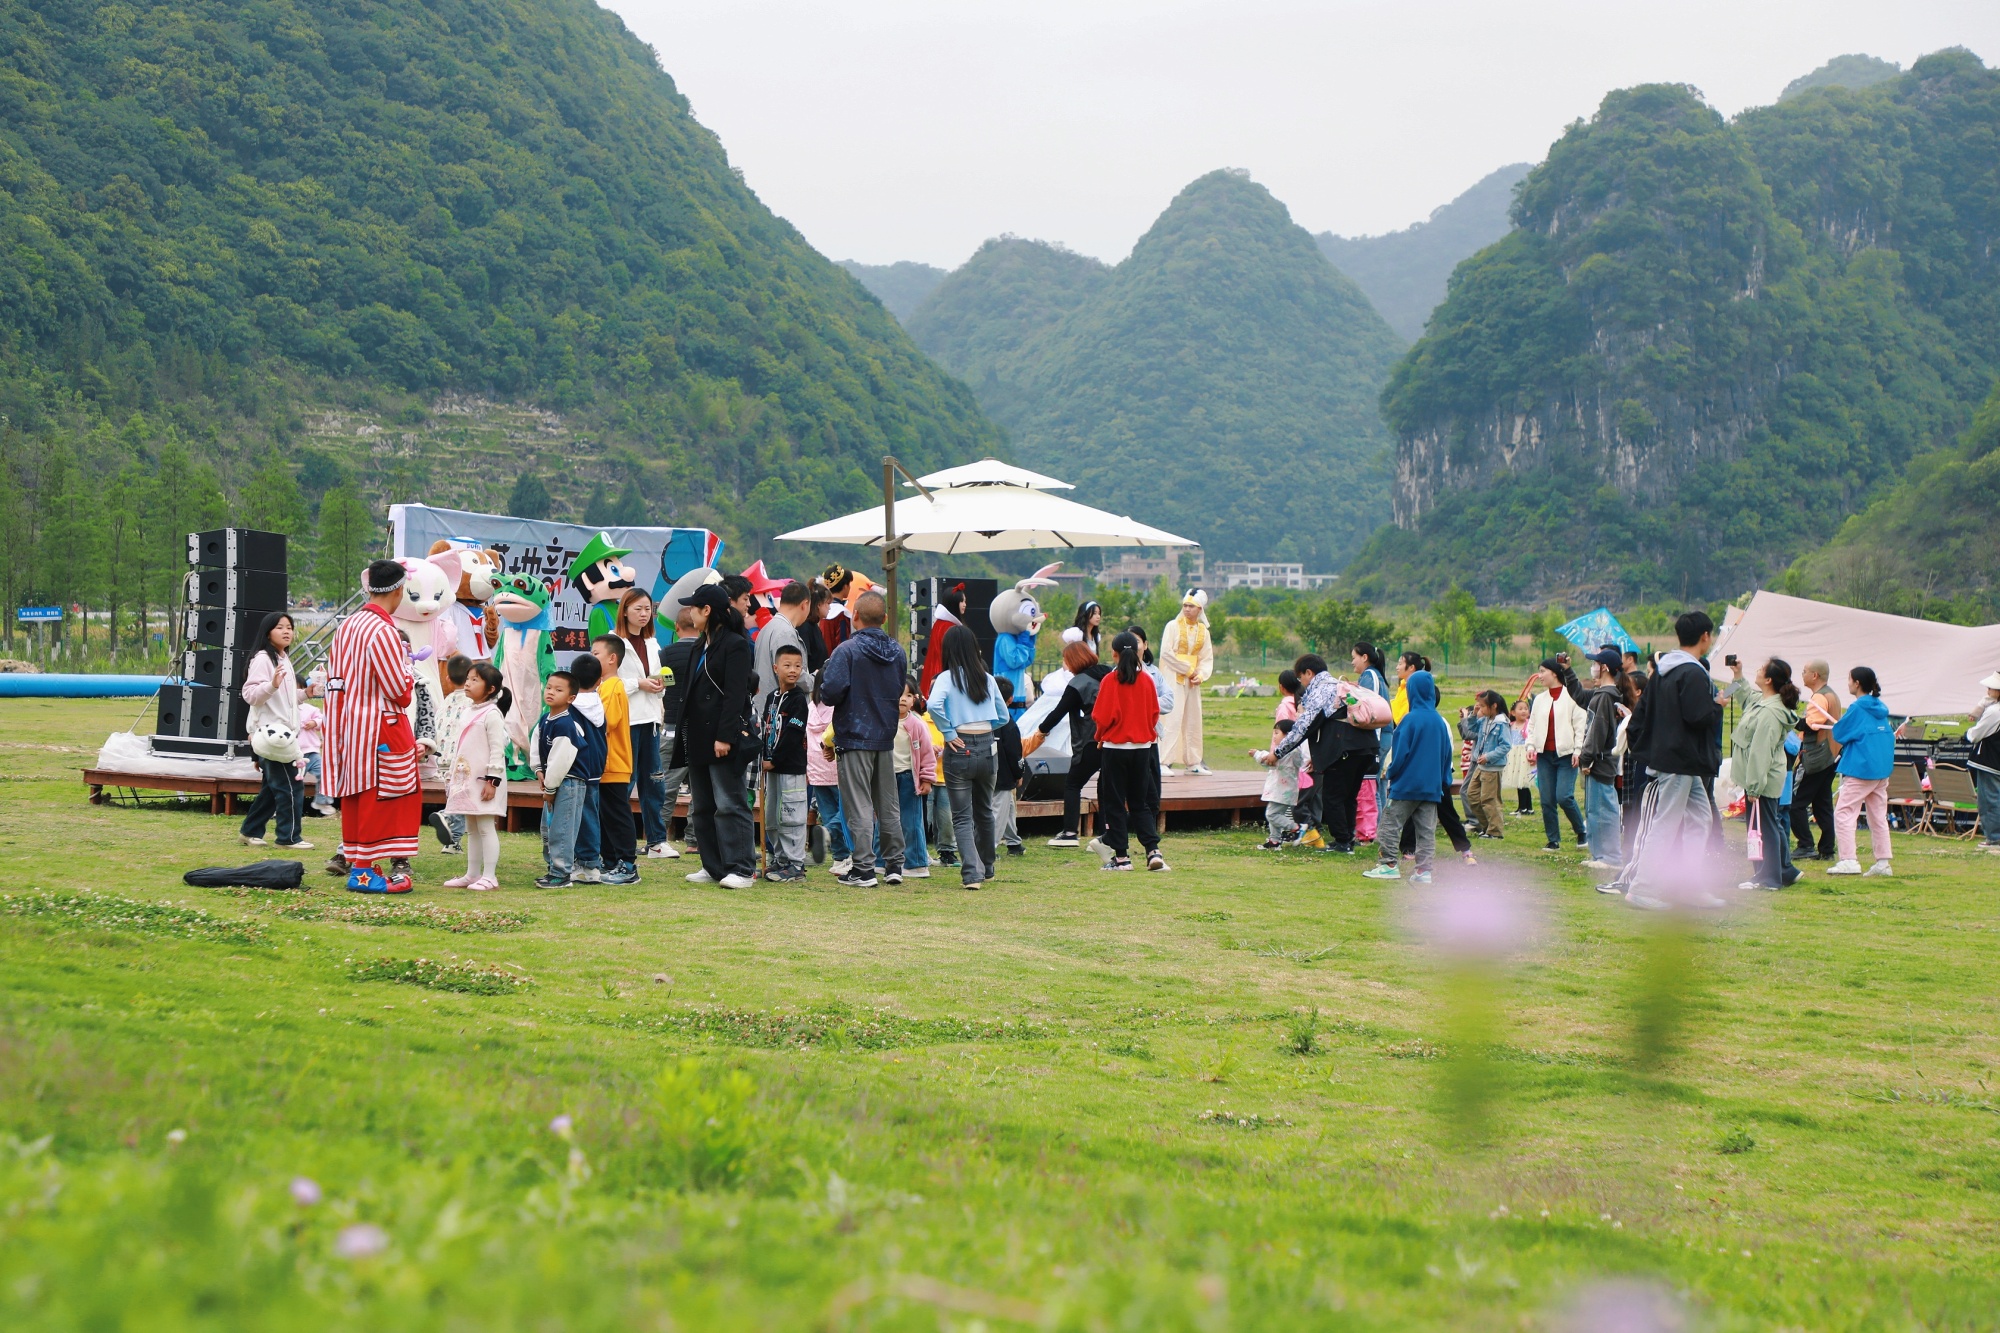 神泉谷景区内玩偶派对吸引游客(长顺县融媒体中心供图)生态旅游吸客